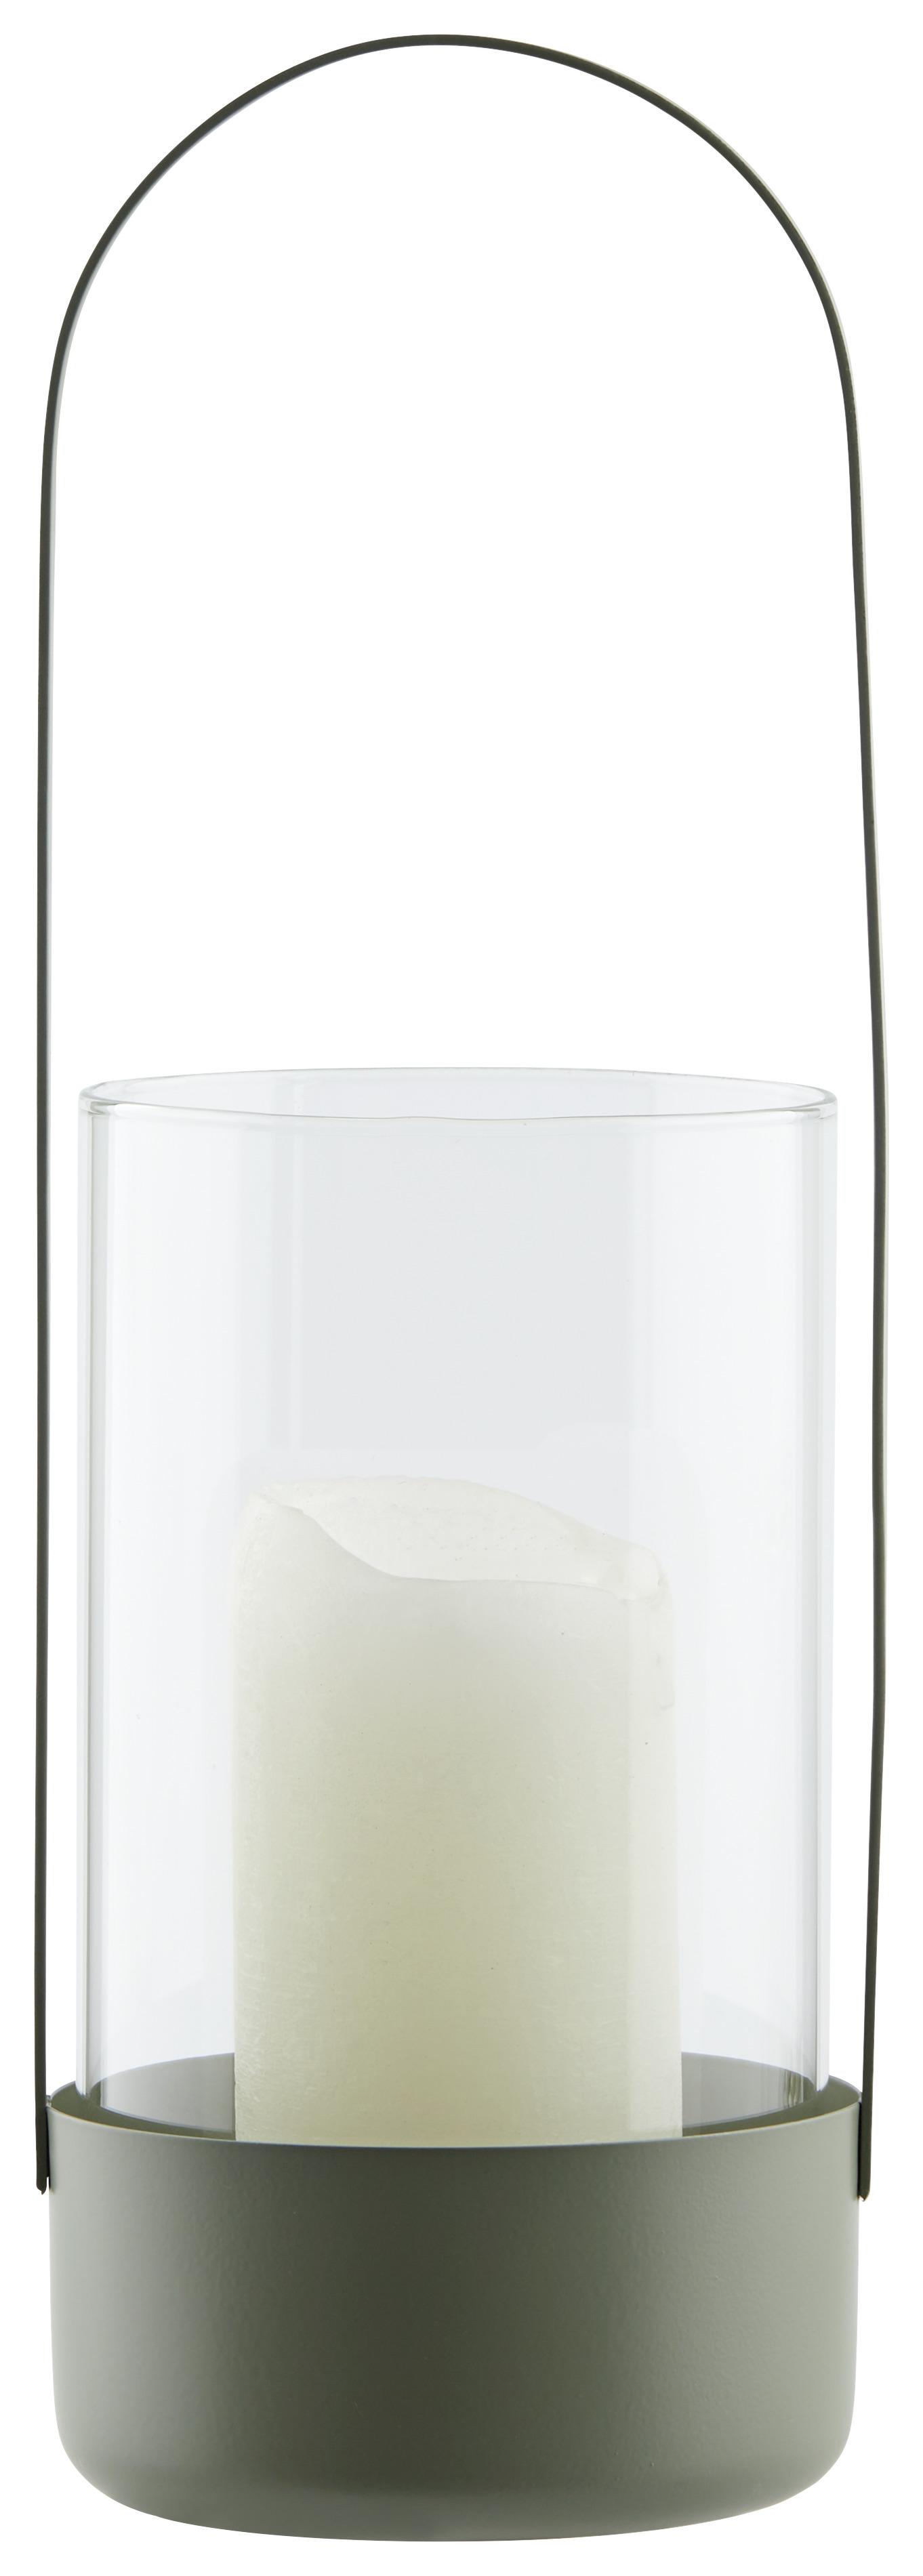 Windlicht Copa in Grün - Grün, Glas/Metall (12,2/37cm) - Modern Living